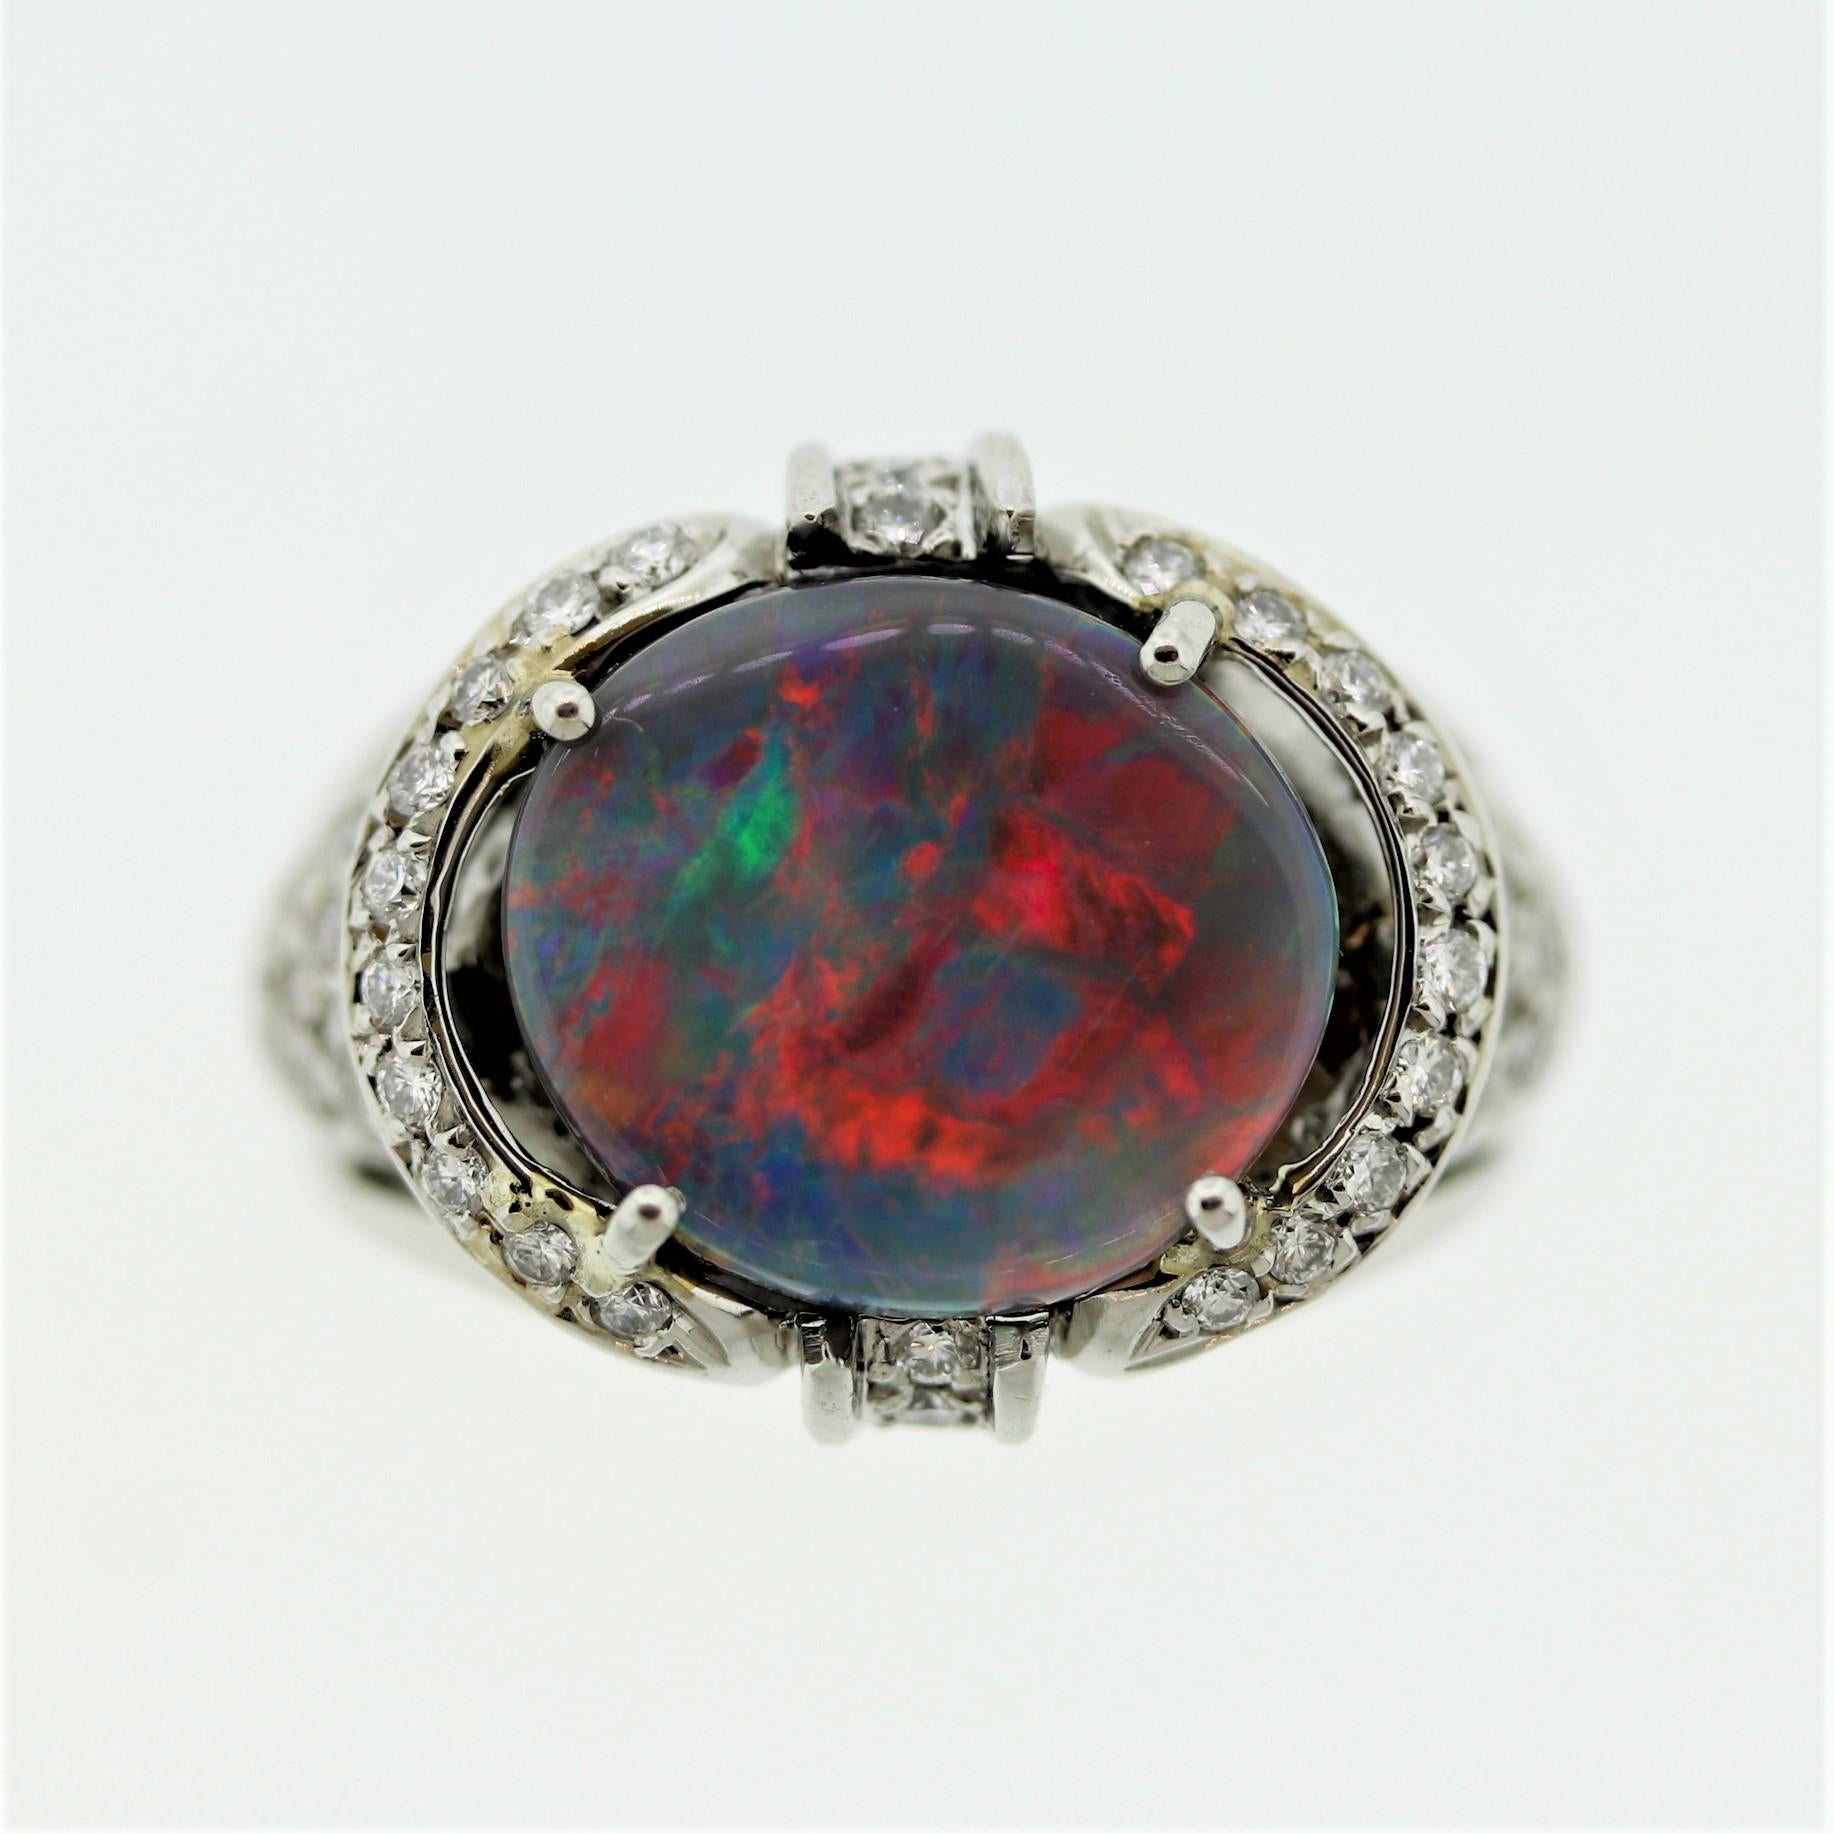 Une opale noire australienne classique avec un jeu de couleurs de qualité supérieure ! L'opale de 3,21 carats présente des éclats brillants de rouges prédominants ainsi que des oranges, des bleus et des verts. D'une grande beauté, elle est rehaussée